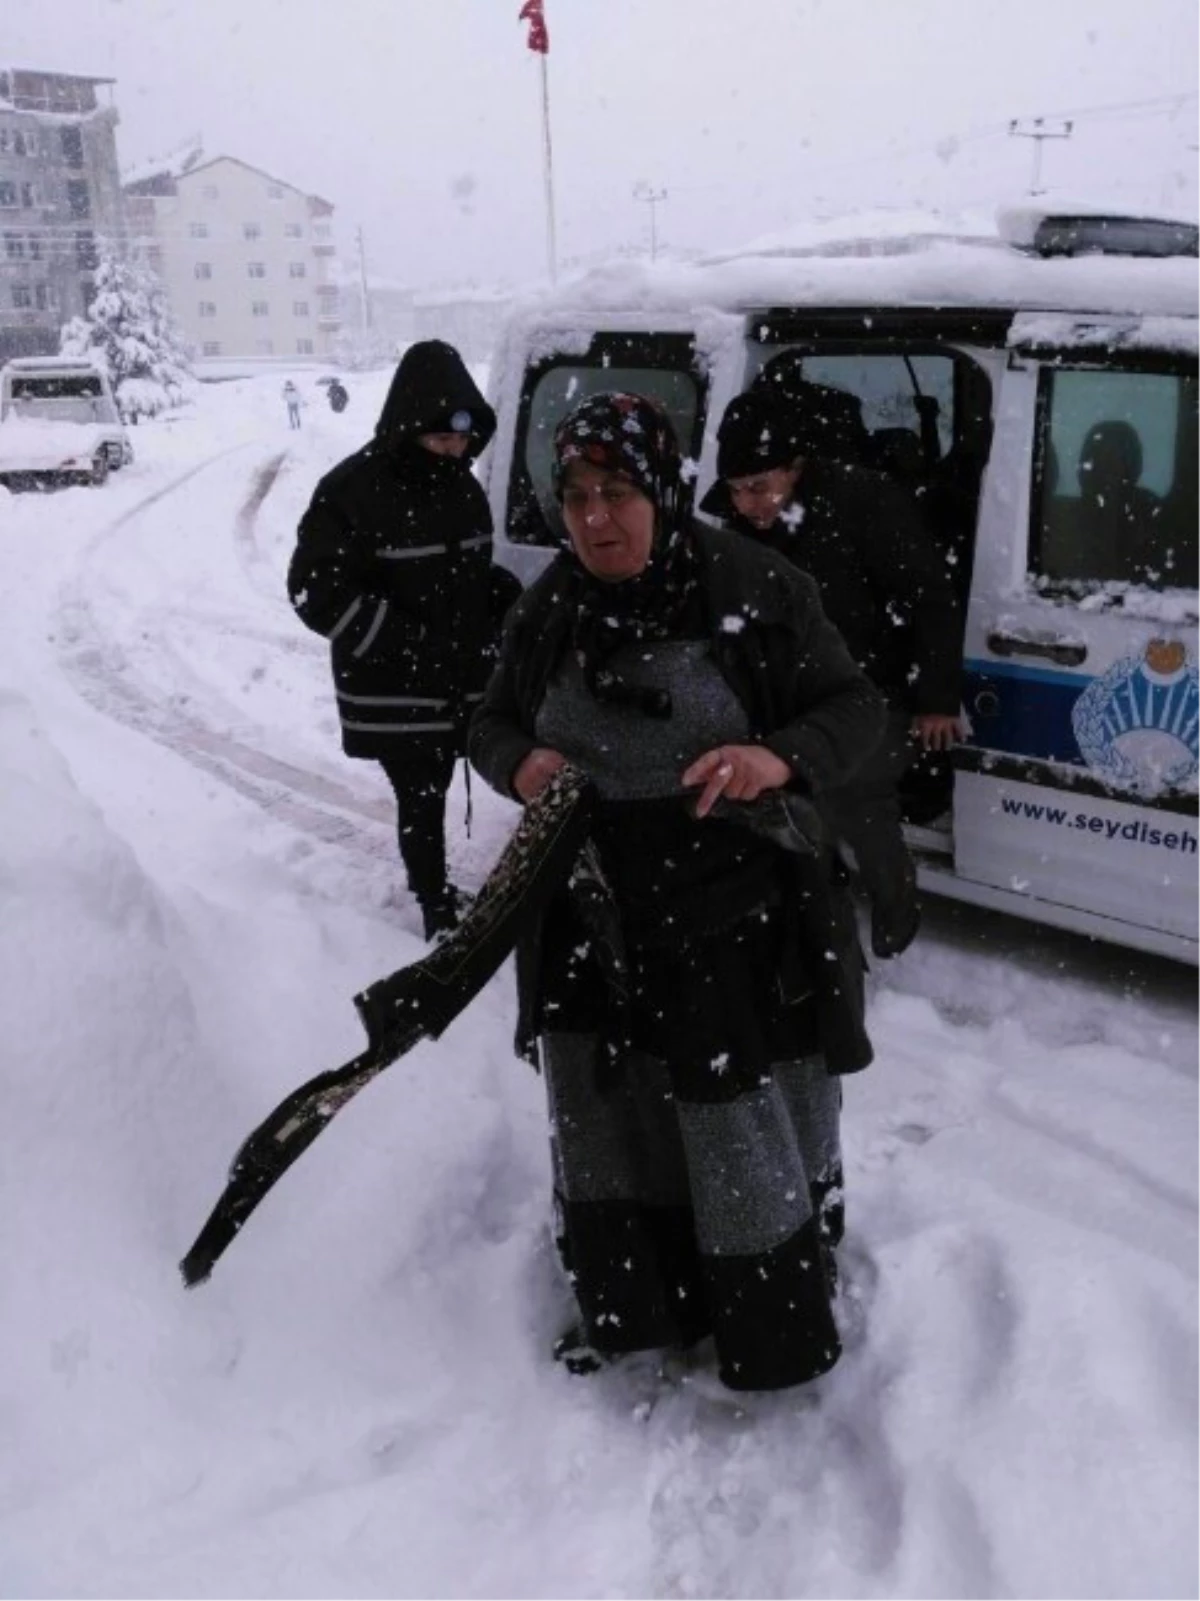 Seydişehir Belediyesi, Kardan Yollar Kapanınca Diyaliz Hastalarını Hastaneye Taşıdı